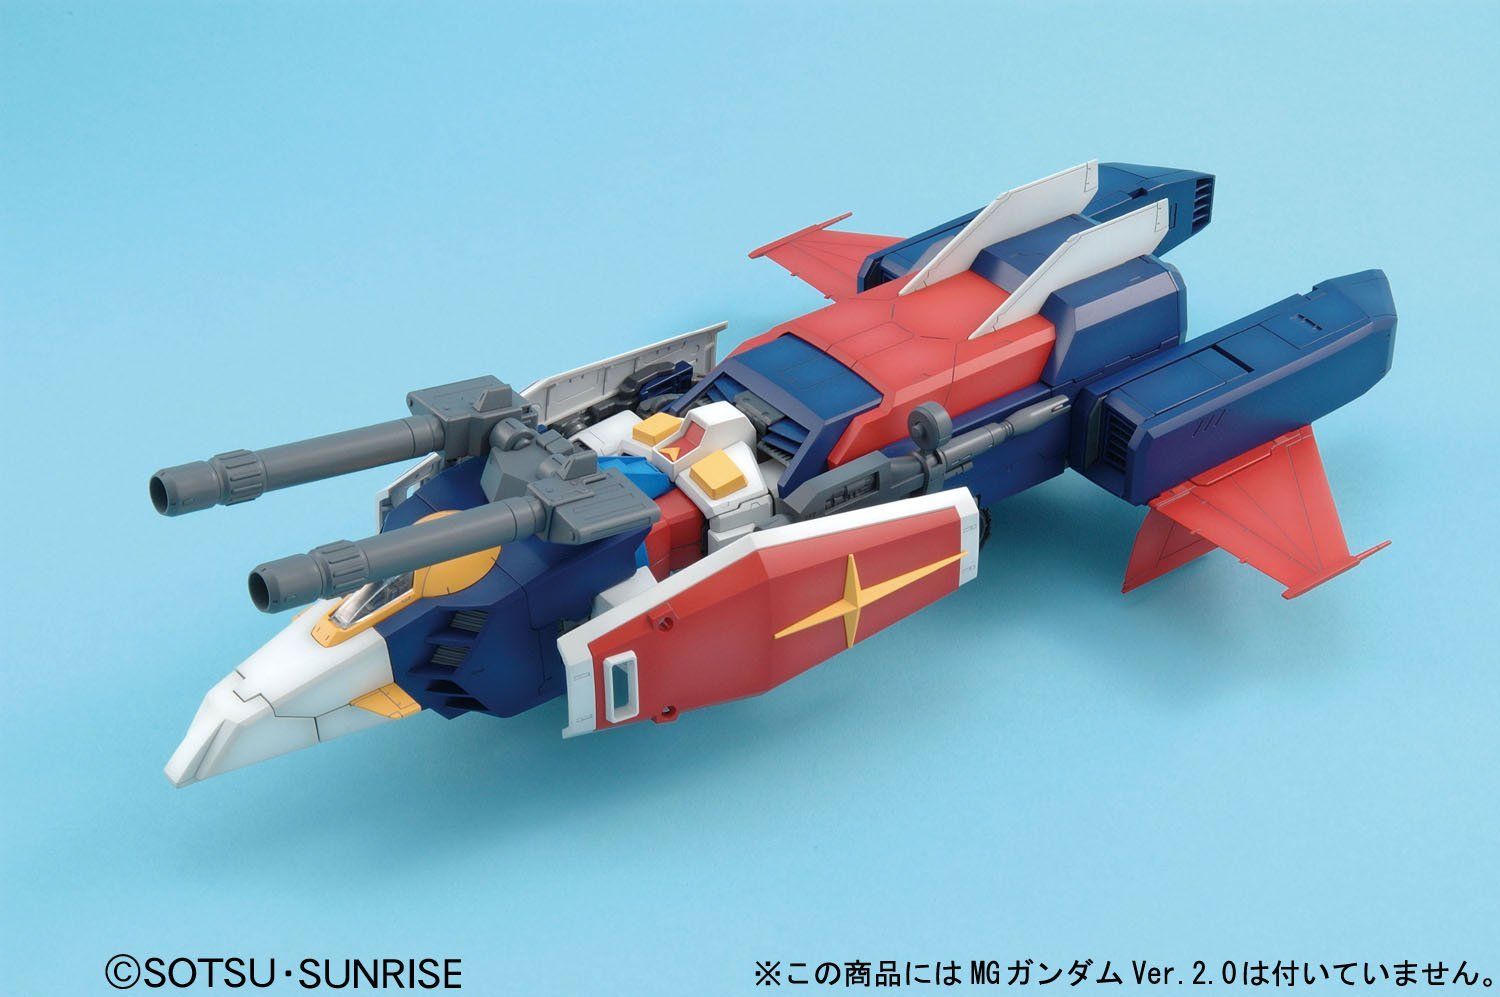 MG 1/100 G Fighter - Master Grade Mobile Suit Gundam | Glacier Hobbies